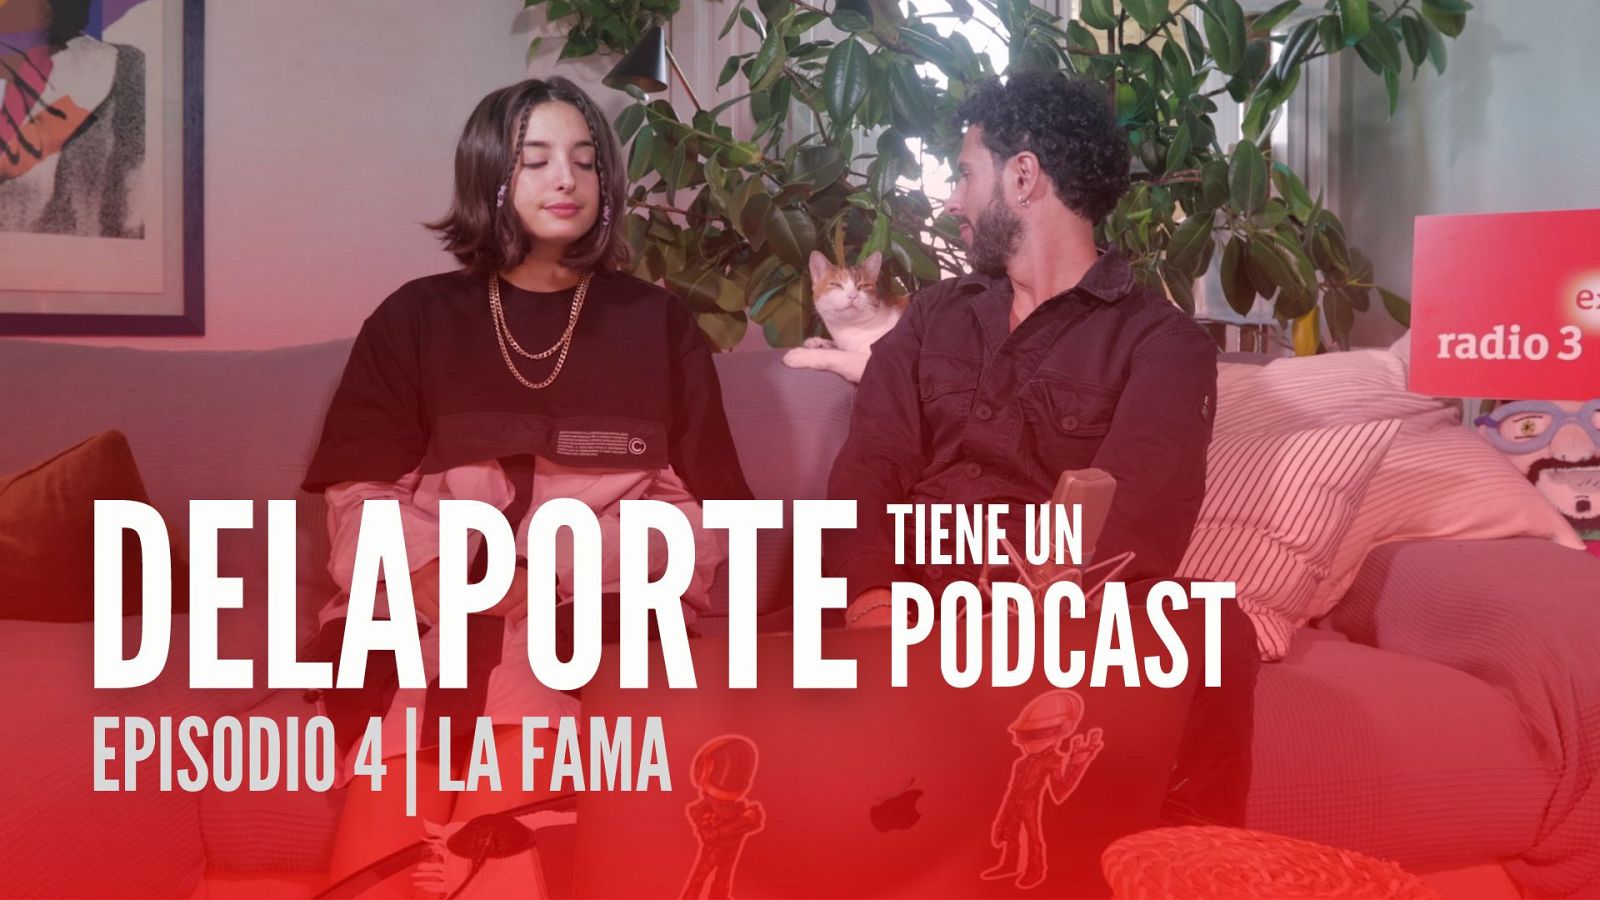 Delaporte tiene un podcast - La fama